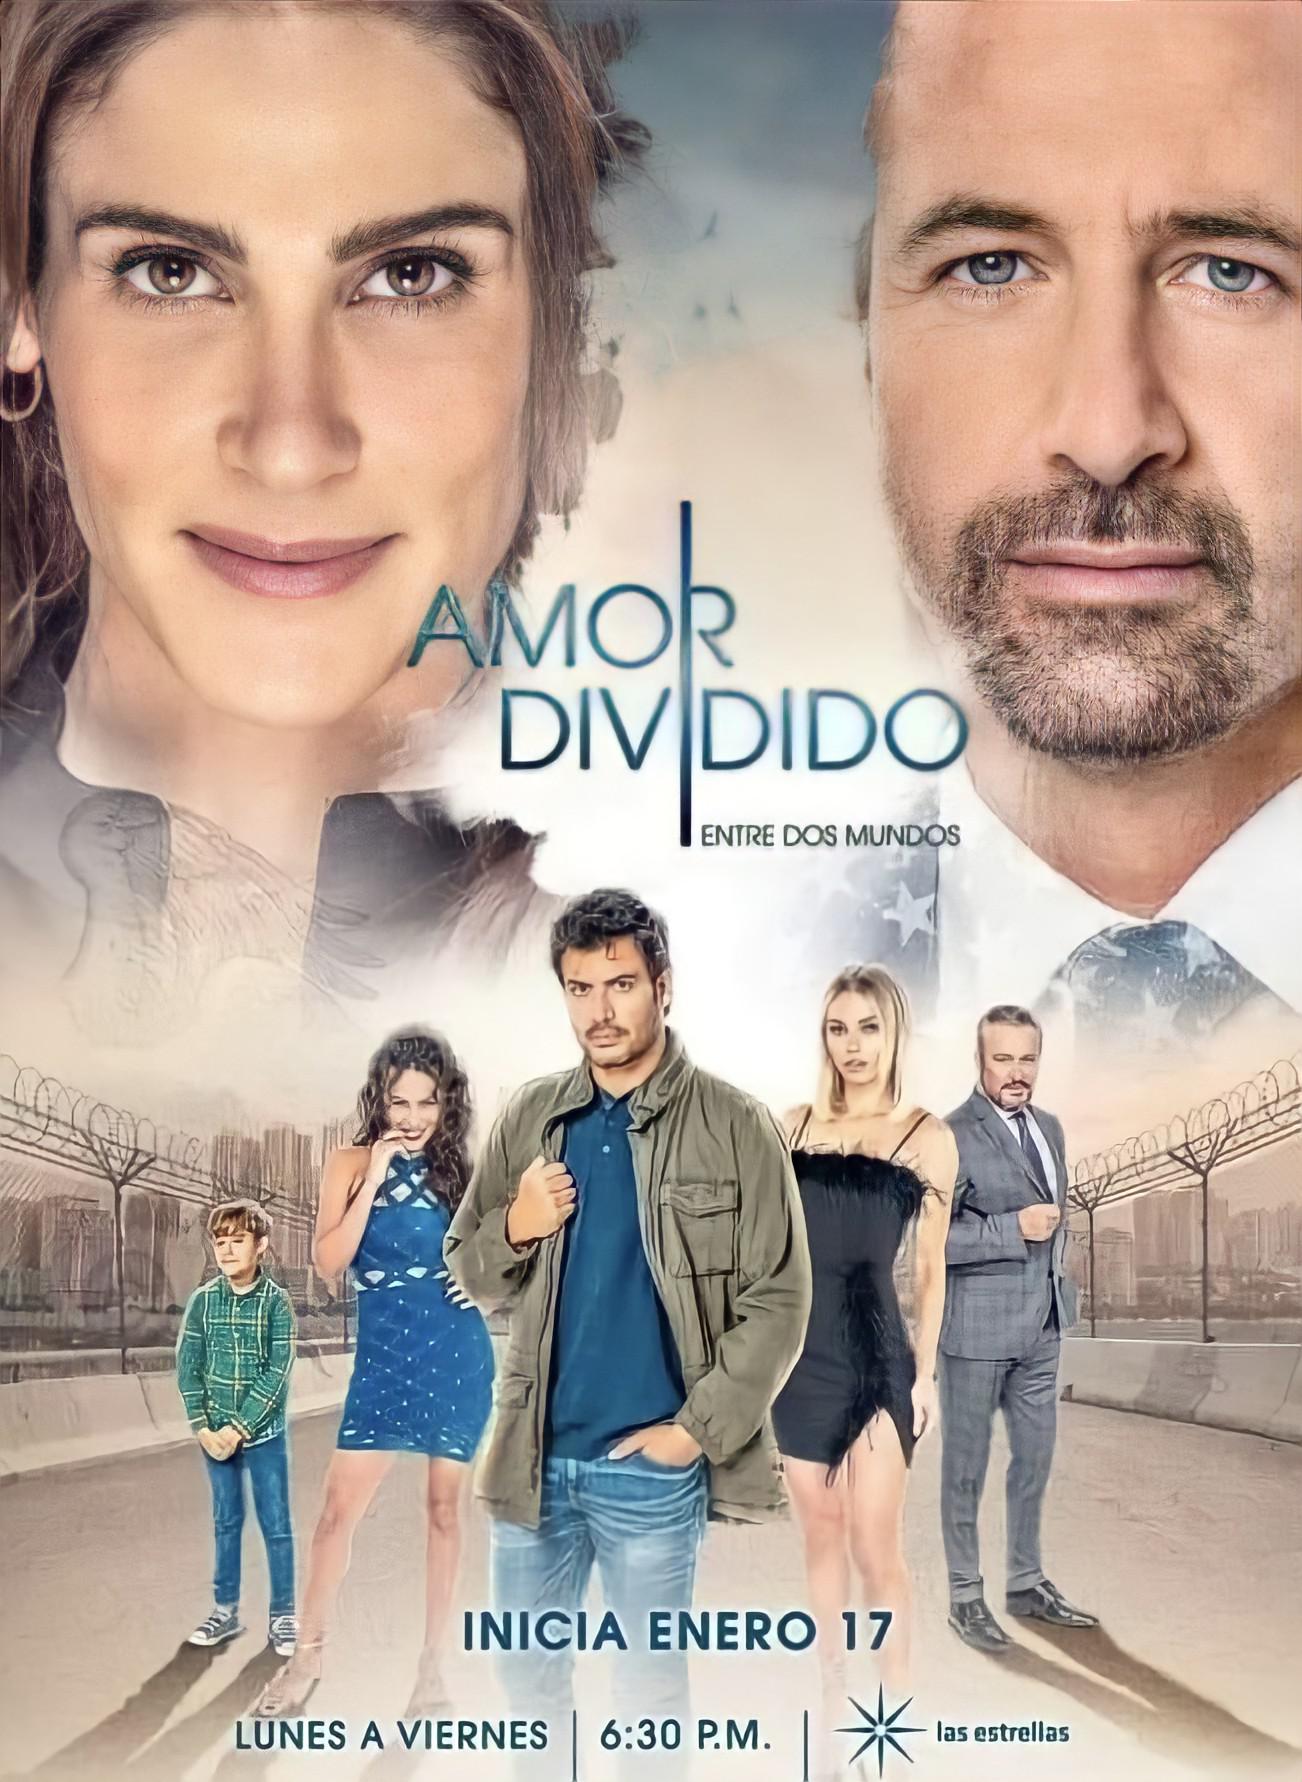 TV ratings for Amor Dividido in Sweden. Las Estrellas TV series